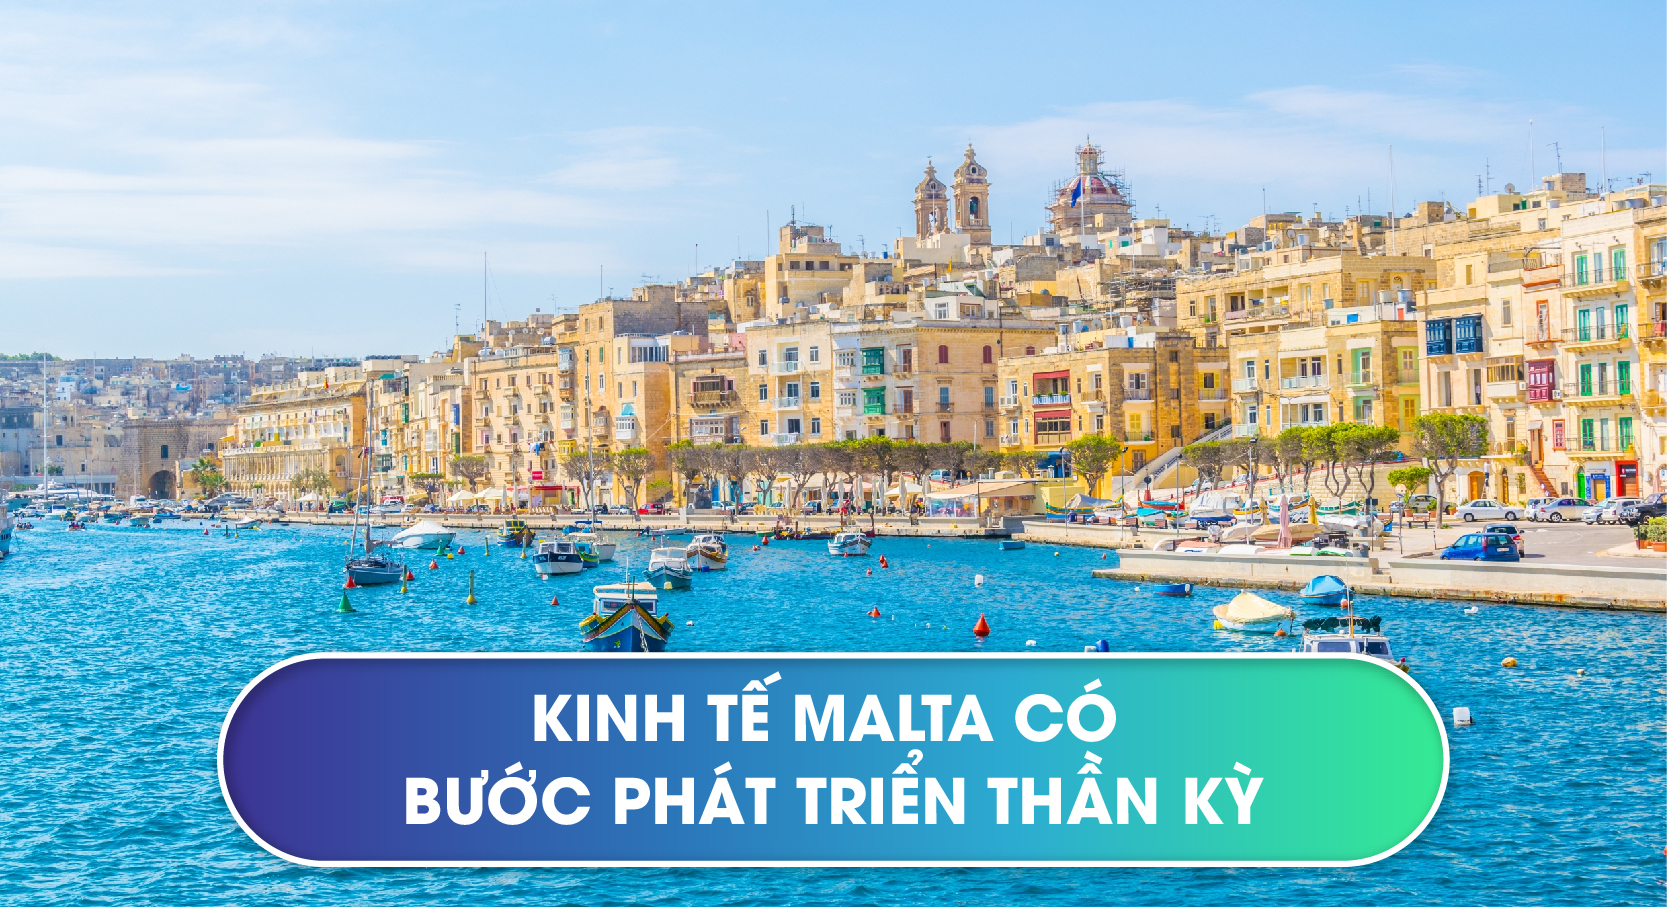 Kinh tế Malta có bước phát triển thần kỳ